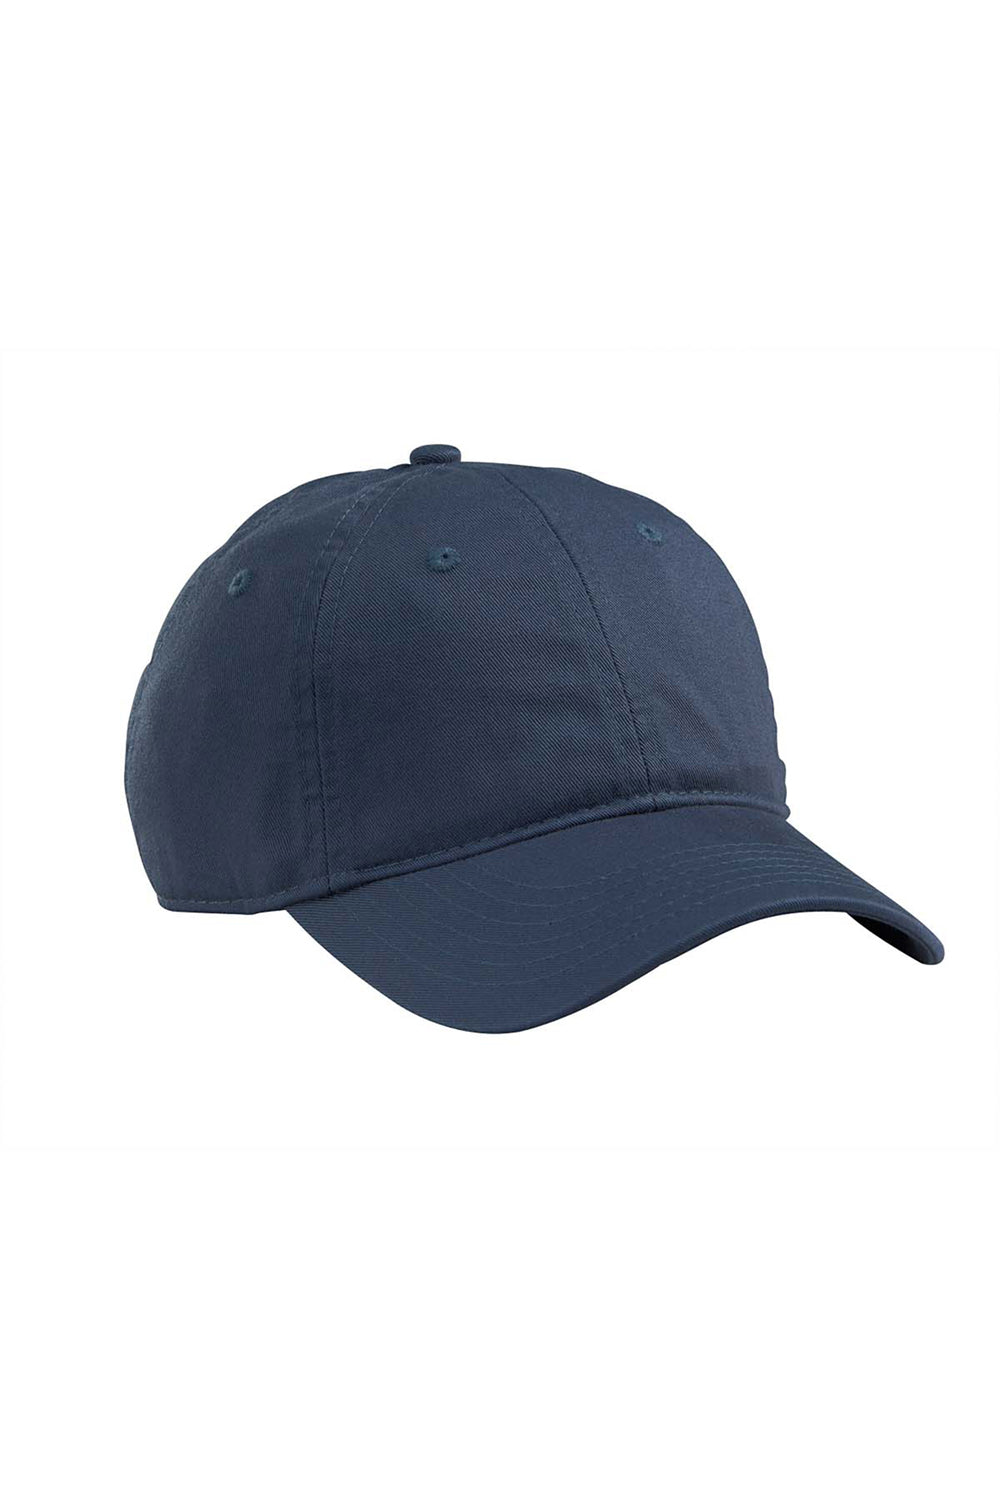 Econscious EC7000 Mens Adjustable Hat Pacific Blue Front